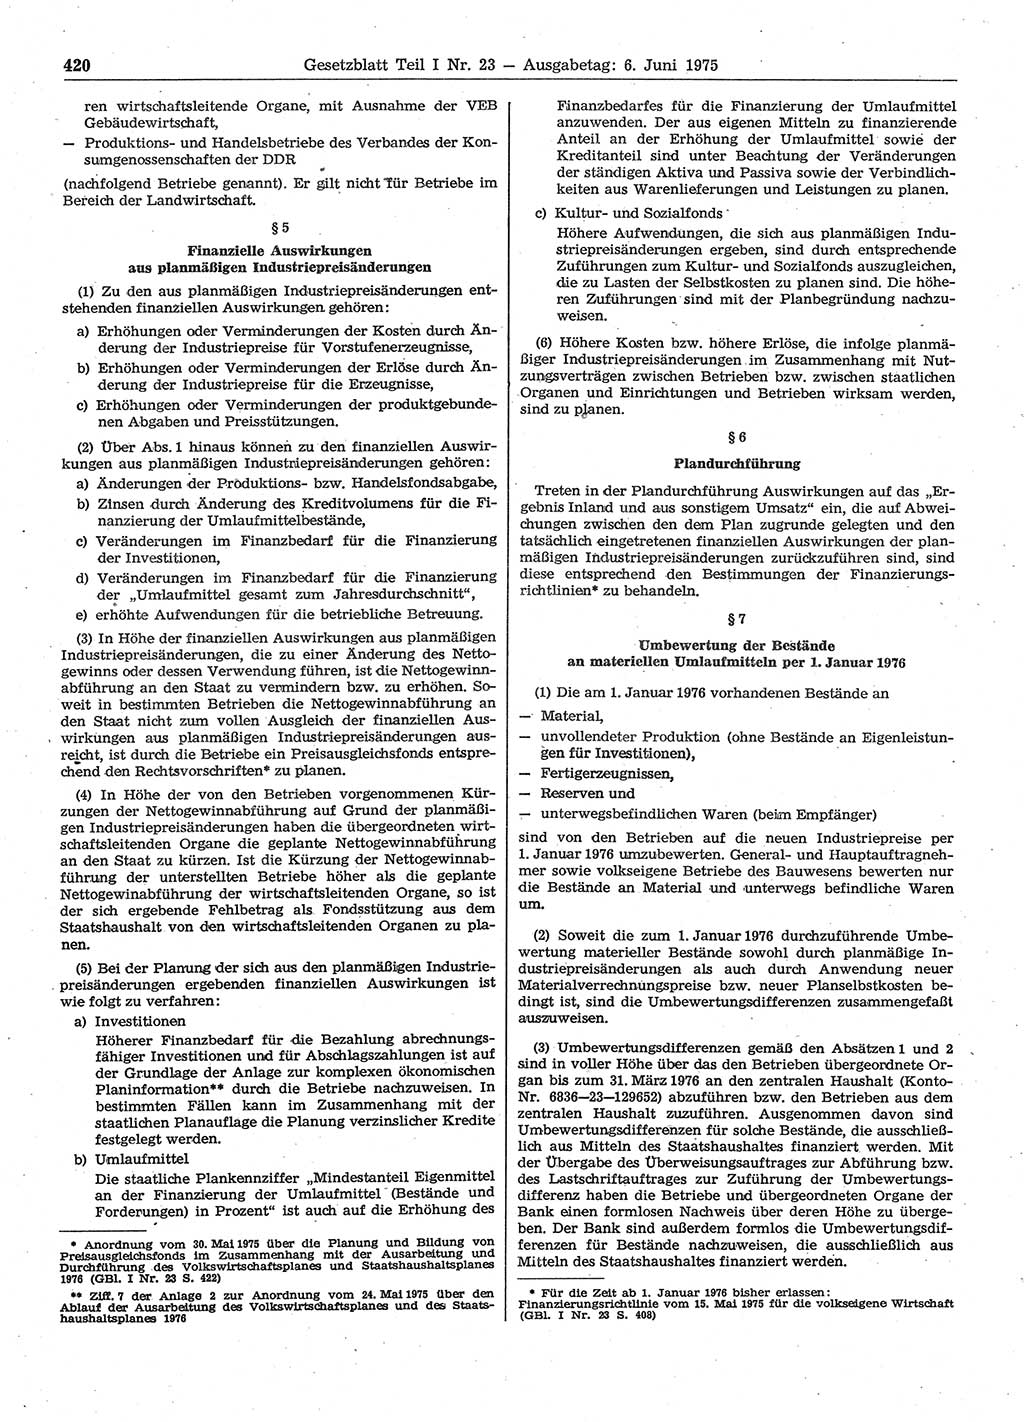 Gesetzblatt (GBl.) der Deutschen Demokratischen Republik (DDR) Teil Ⅰ 1975, Seite 420 (GBl. DDR Ⅰ 1975, S. 420)